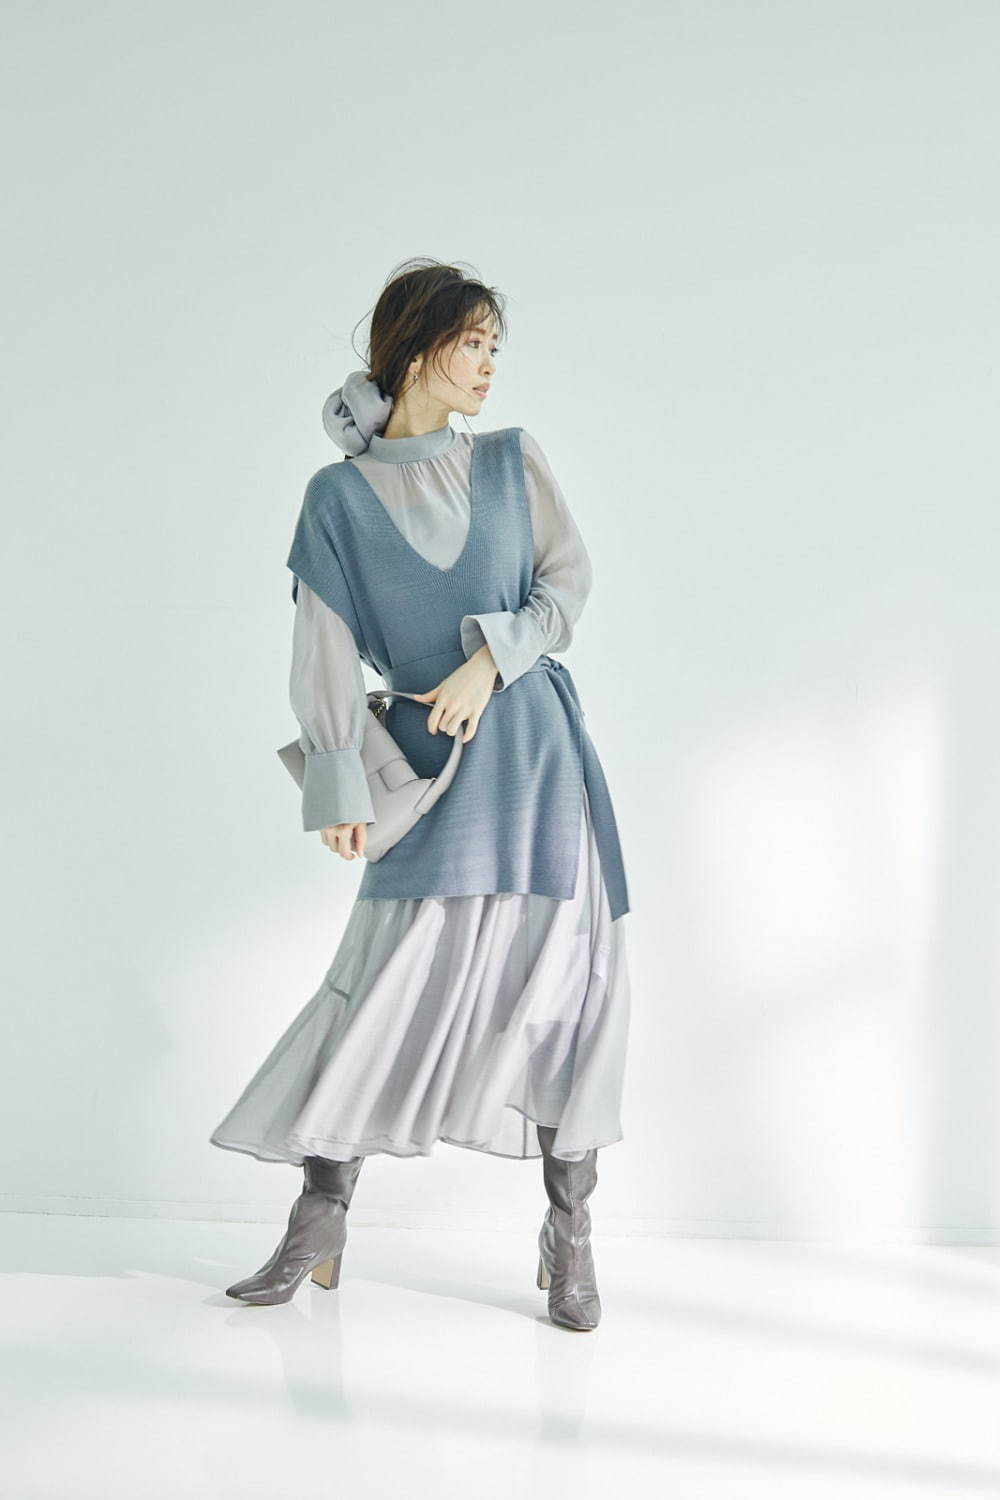 スナイデル年冬新作 透け感プリーツスカートや 1枚で簡単レイヤード ベスト付きワンピース ファッションプレス